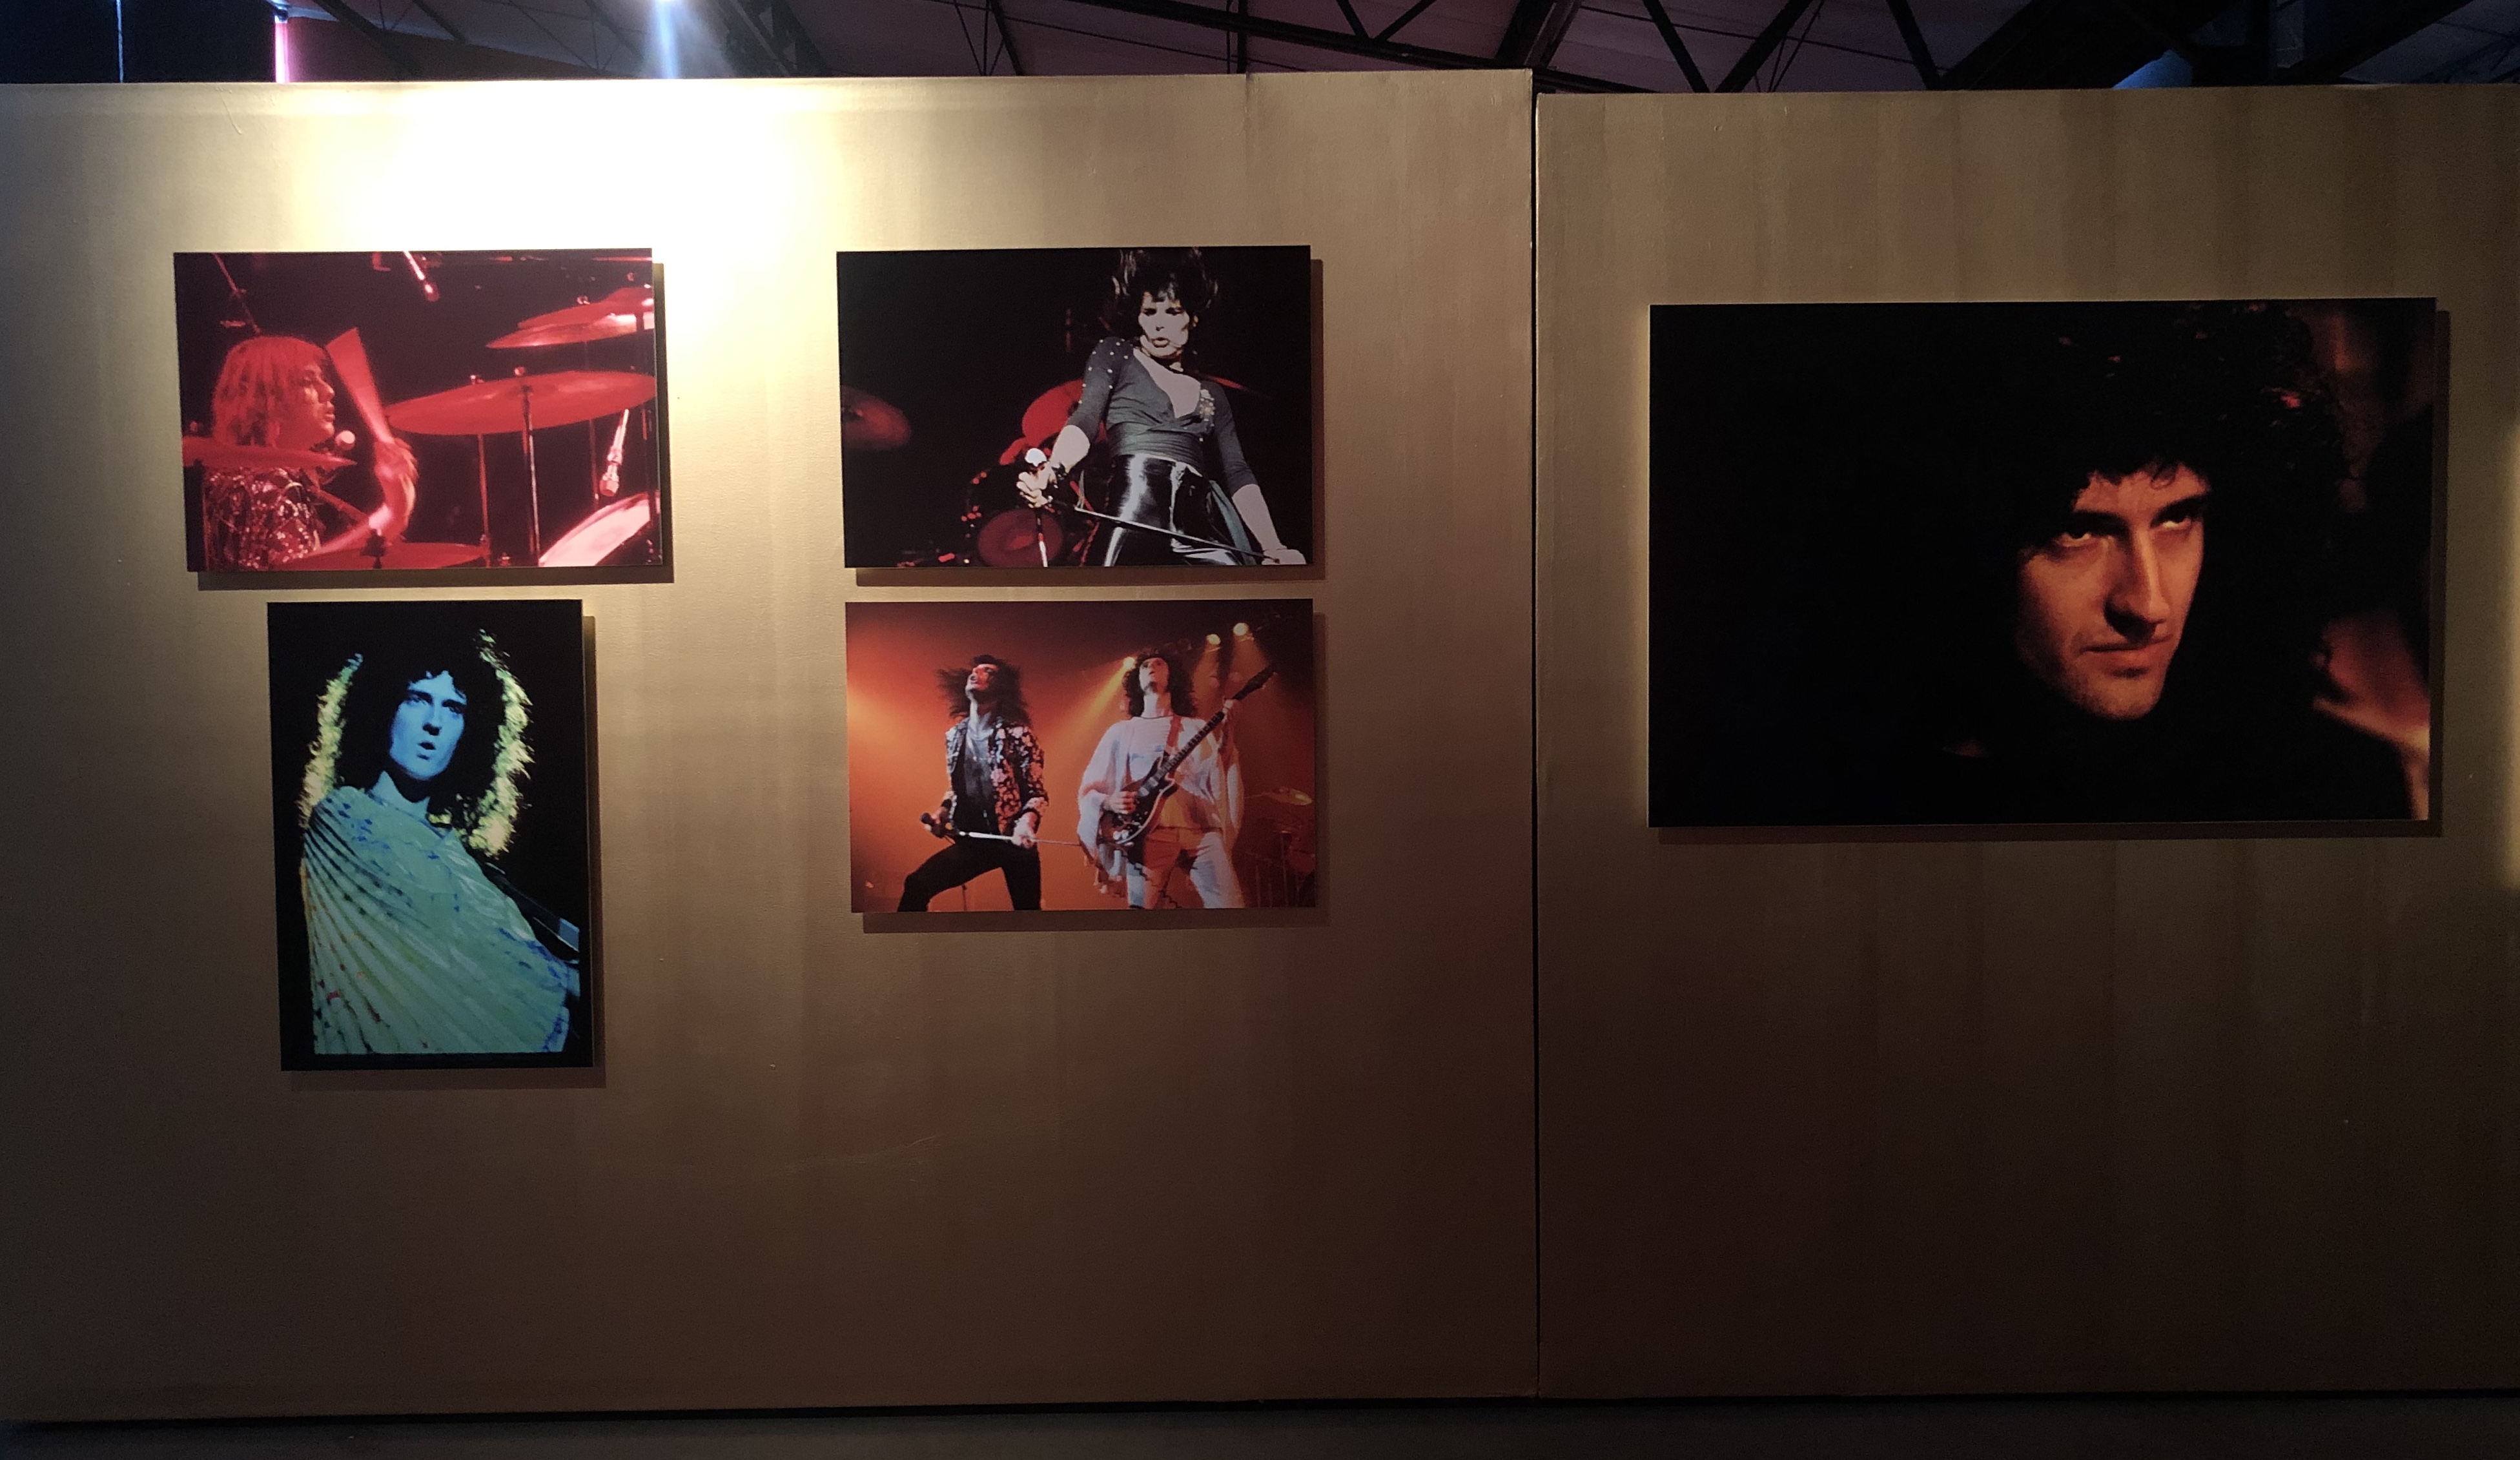 Una nueva expo de Mick Rock se presenta en el Museo de Cuatro Caminos, la cual se titula “Queen: El origen de una leyenda”, que estará hasta abril.